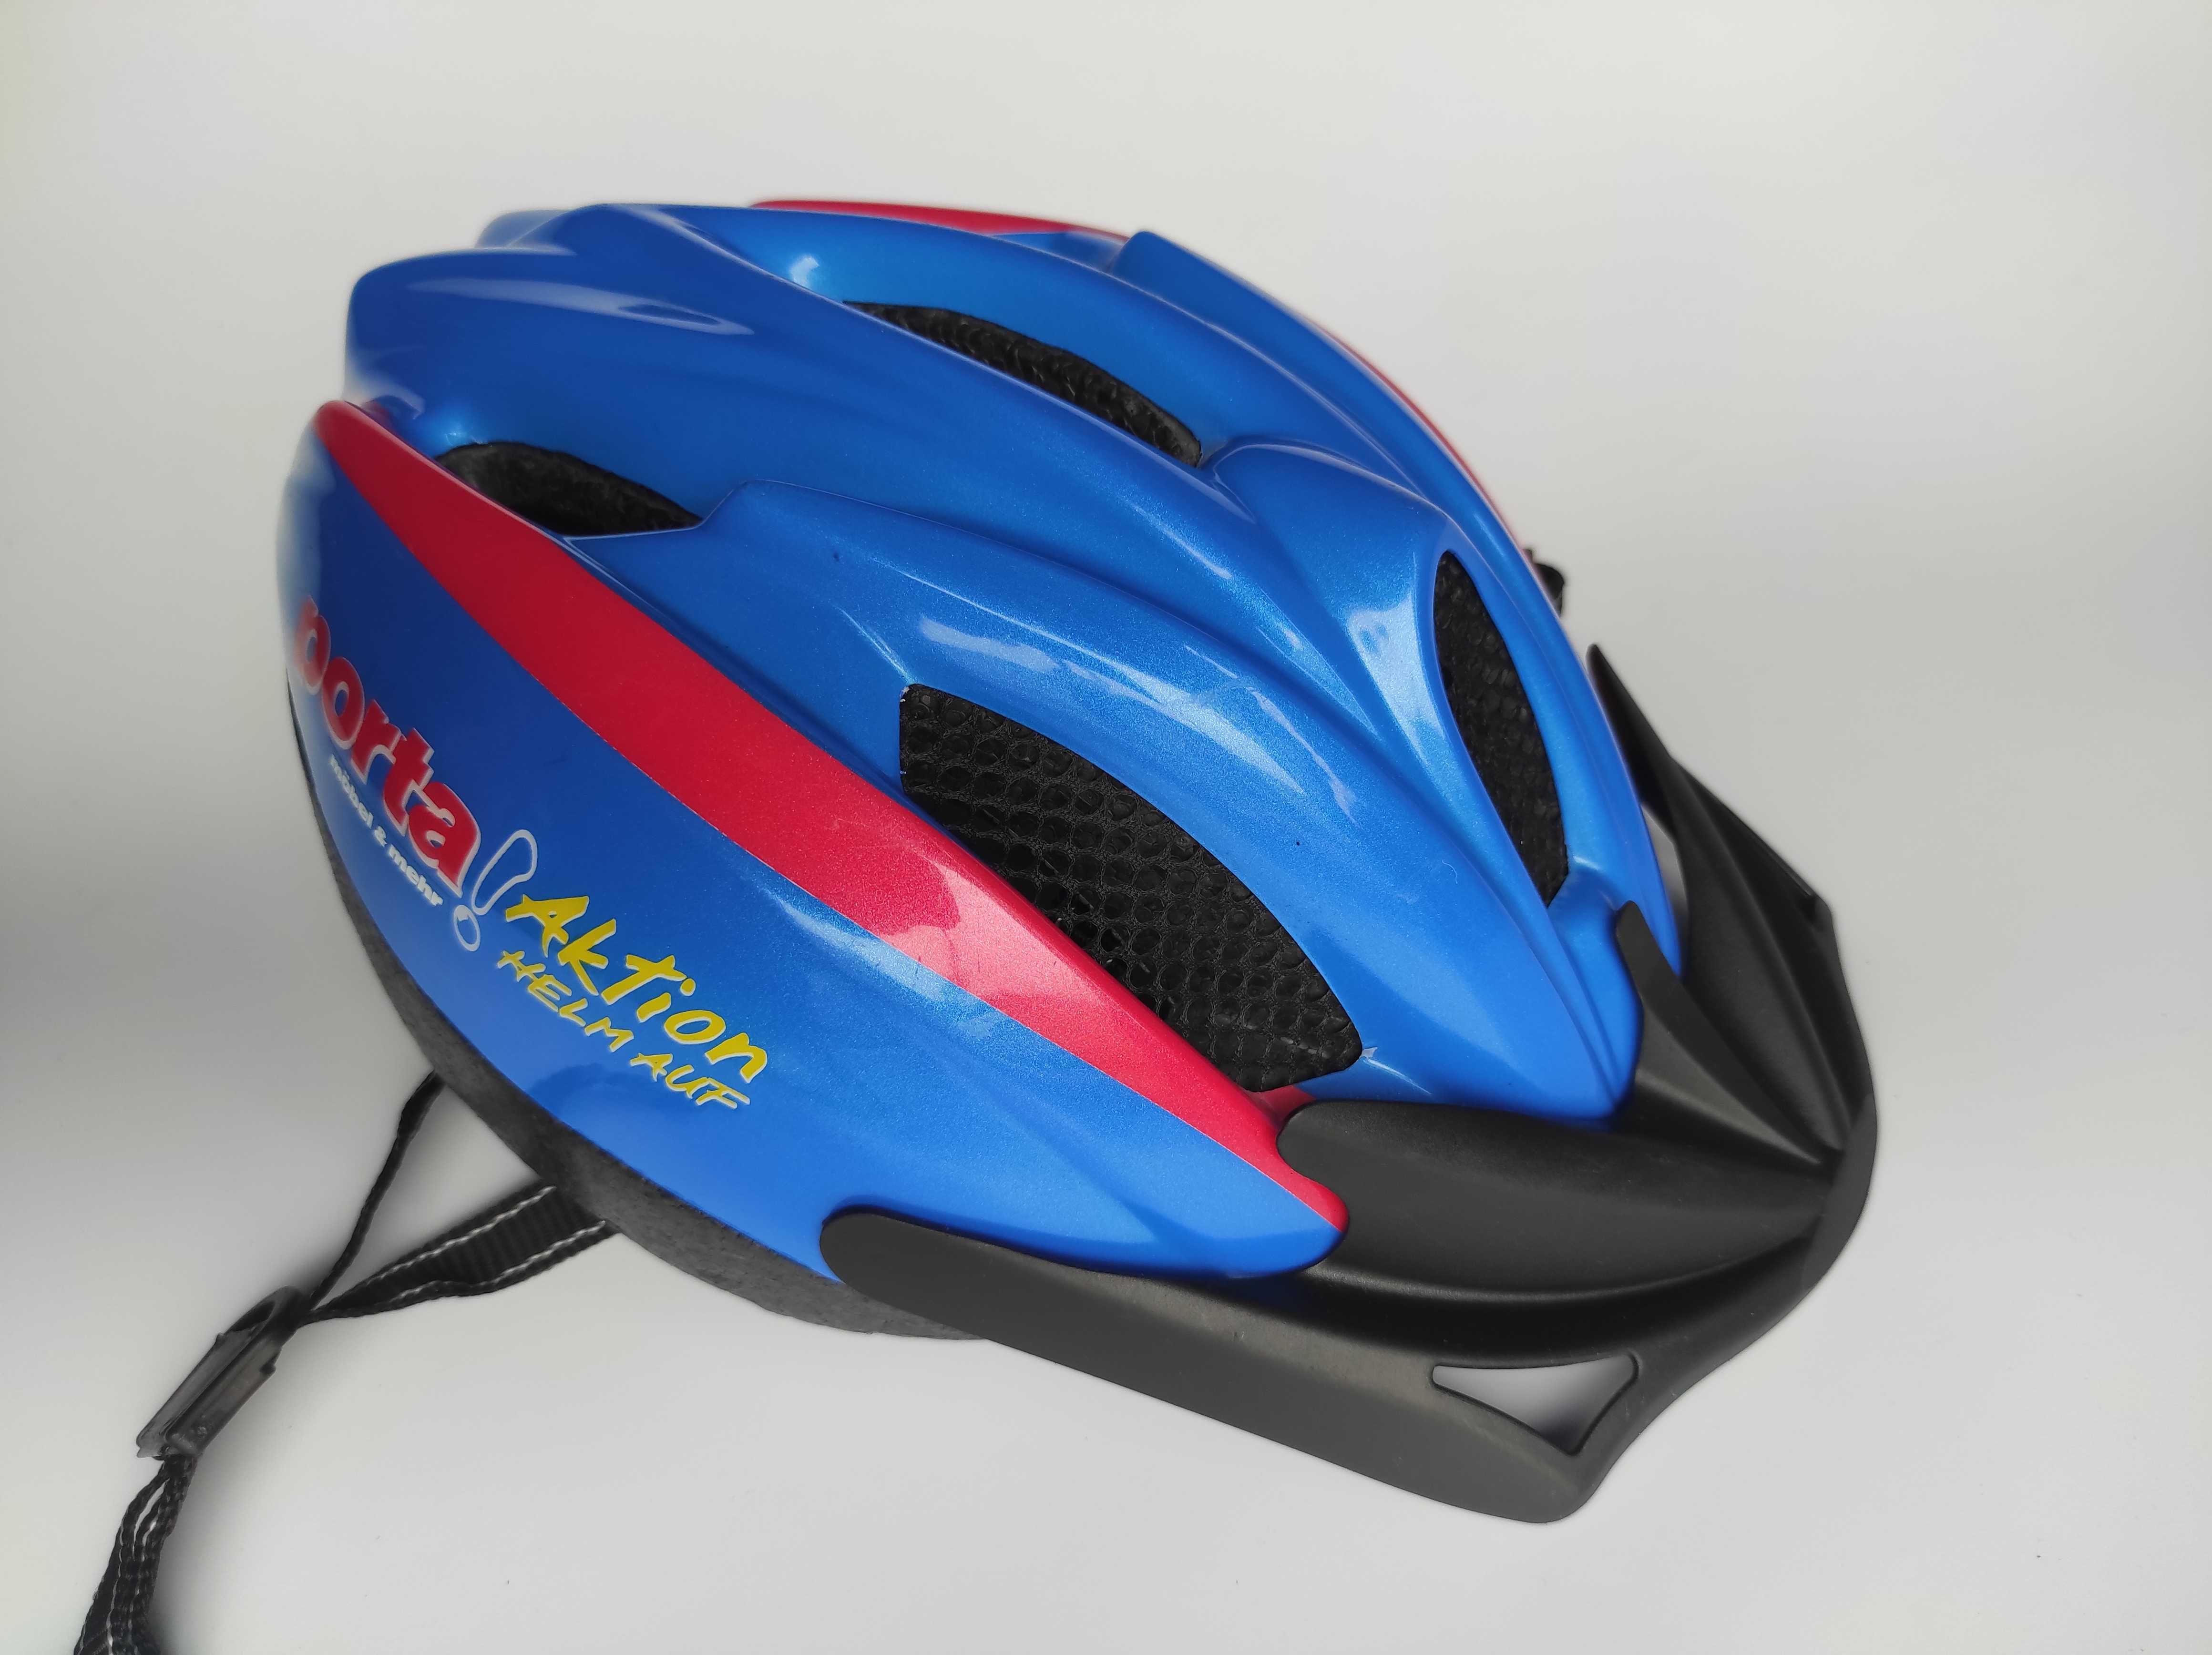 Шлем защитный Ked Flitzi, размер 52-58см, велосипедный, Германия.